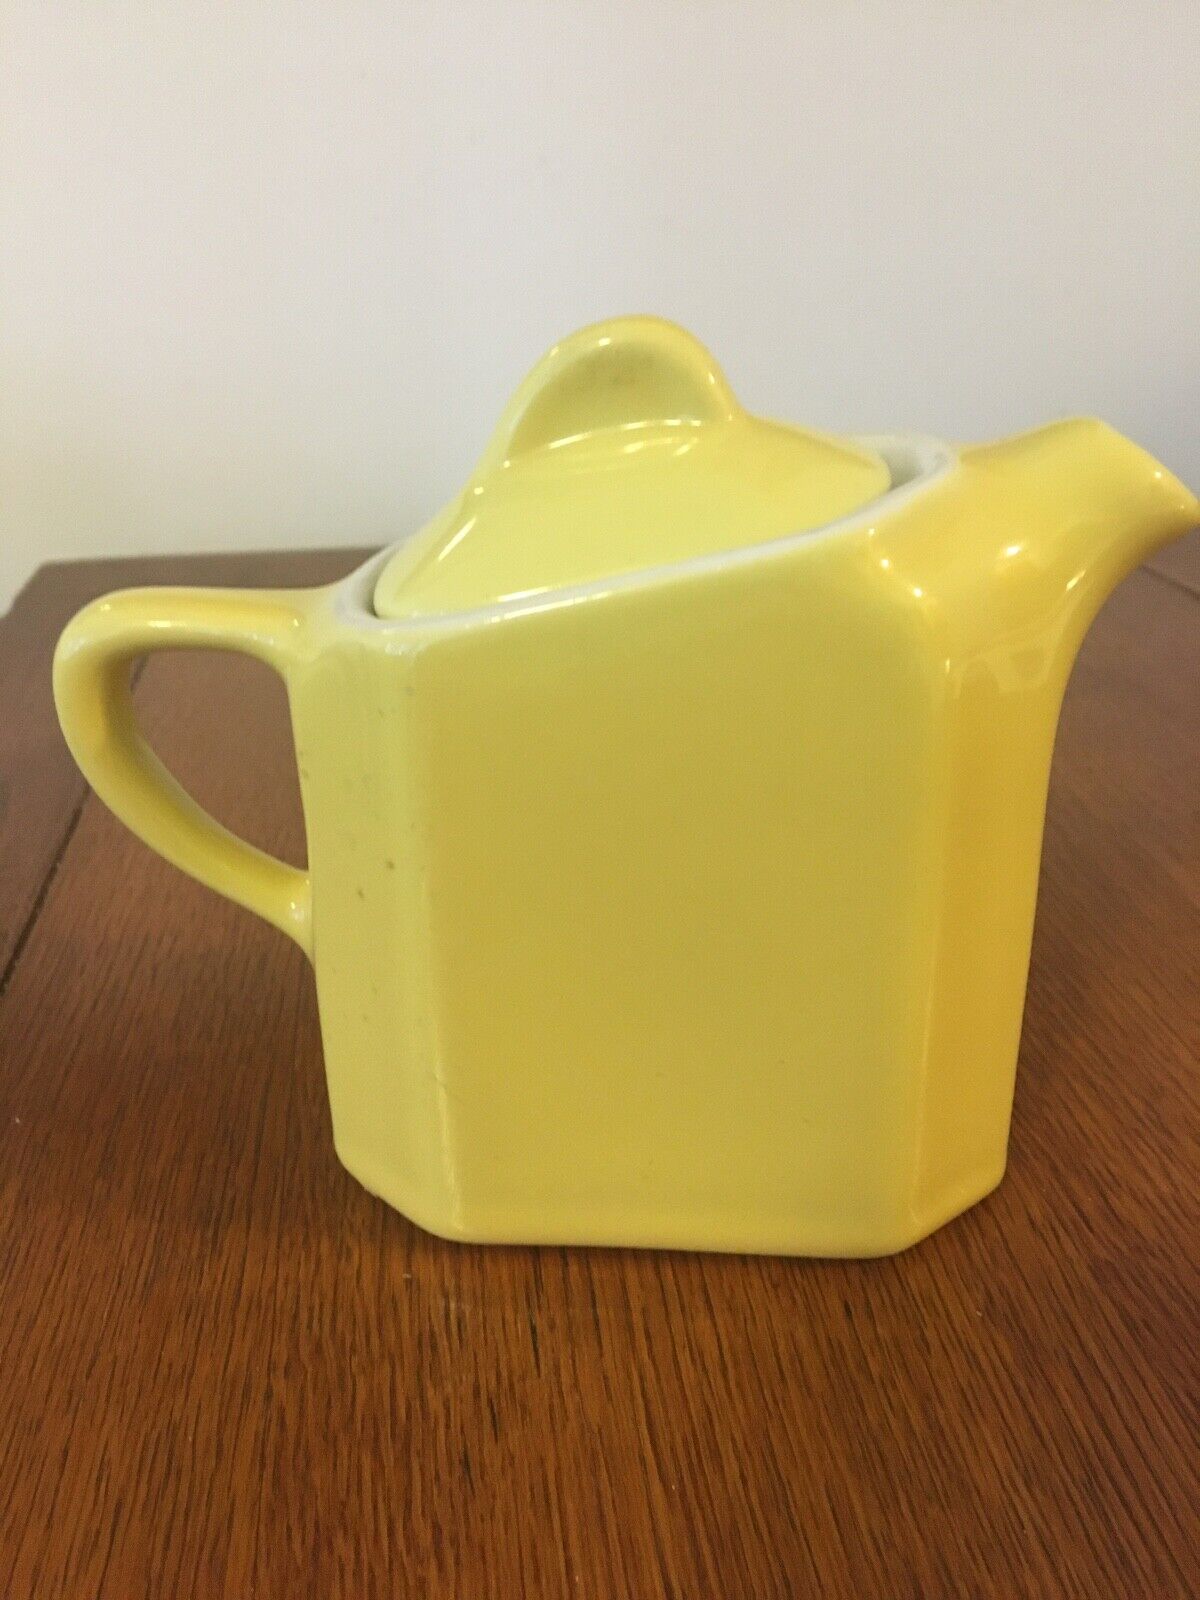 Sunny Yellow Teapot Hall China Company #189 Made USA 1960s 1970s Very Good Condi